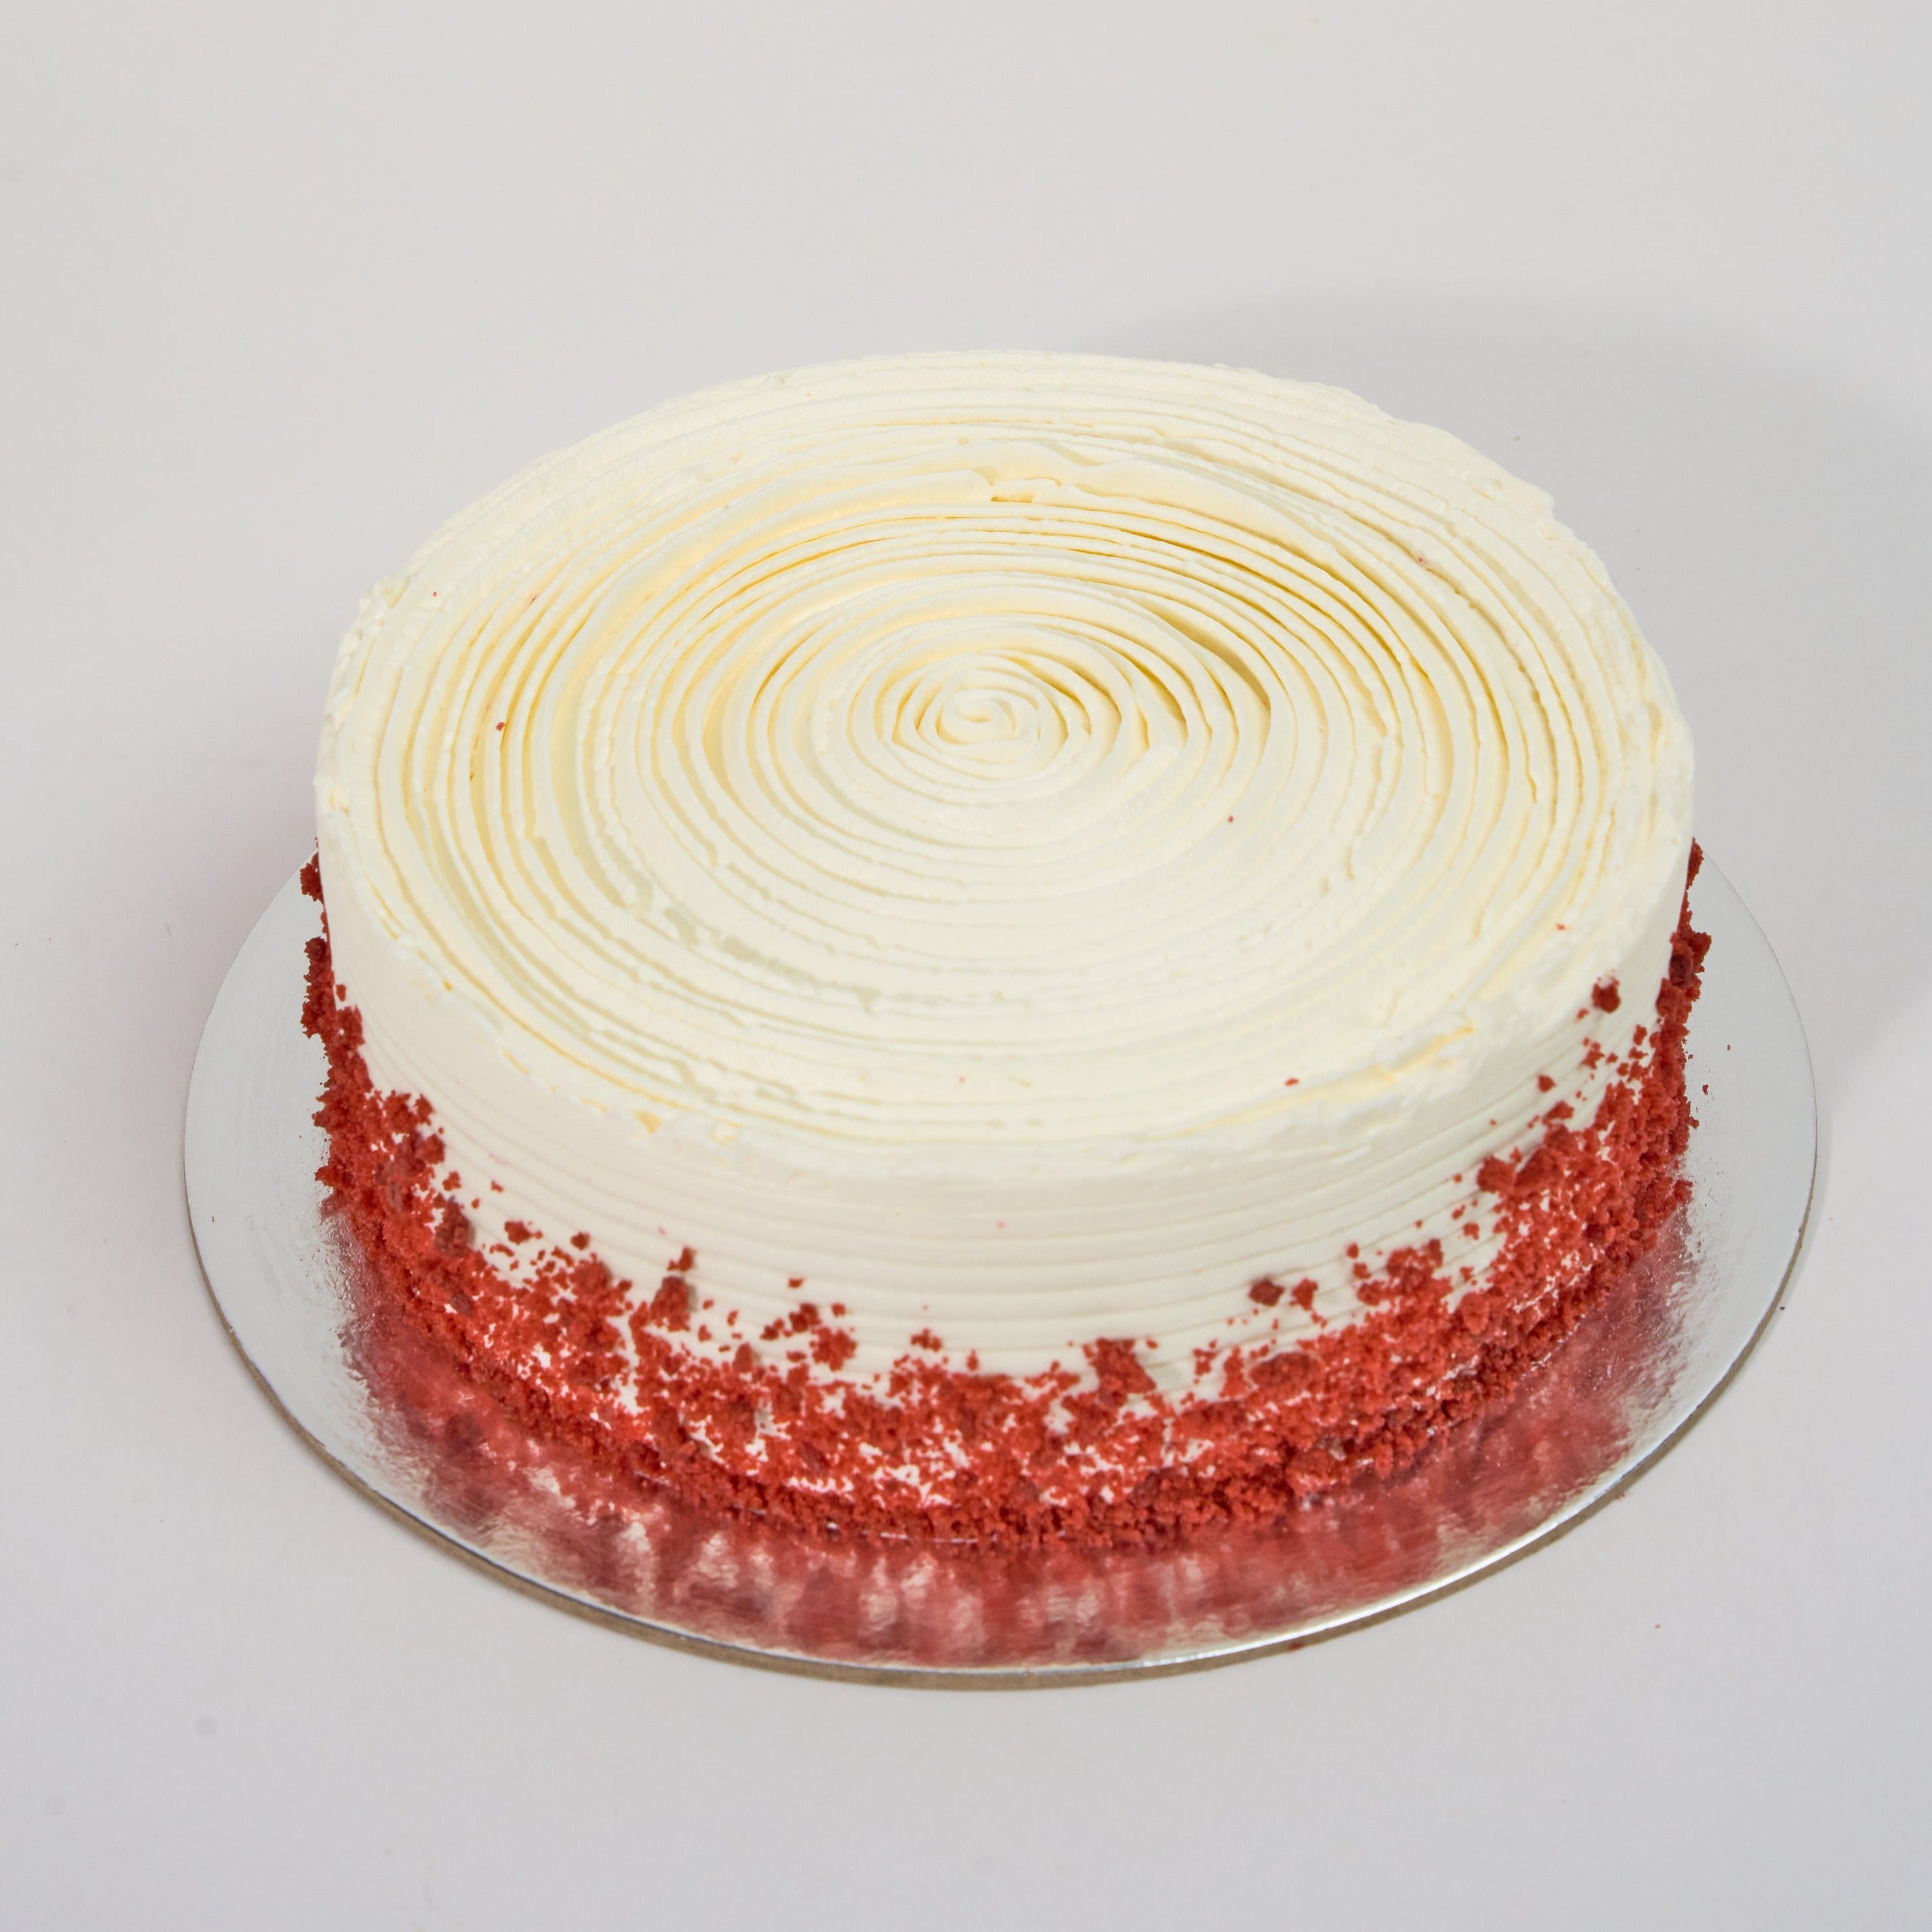 Red Velvet Cake (Whole)